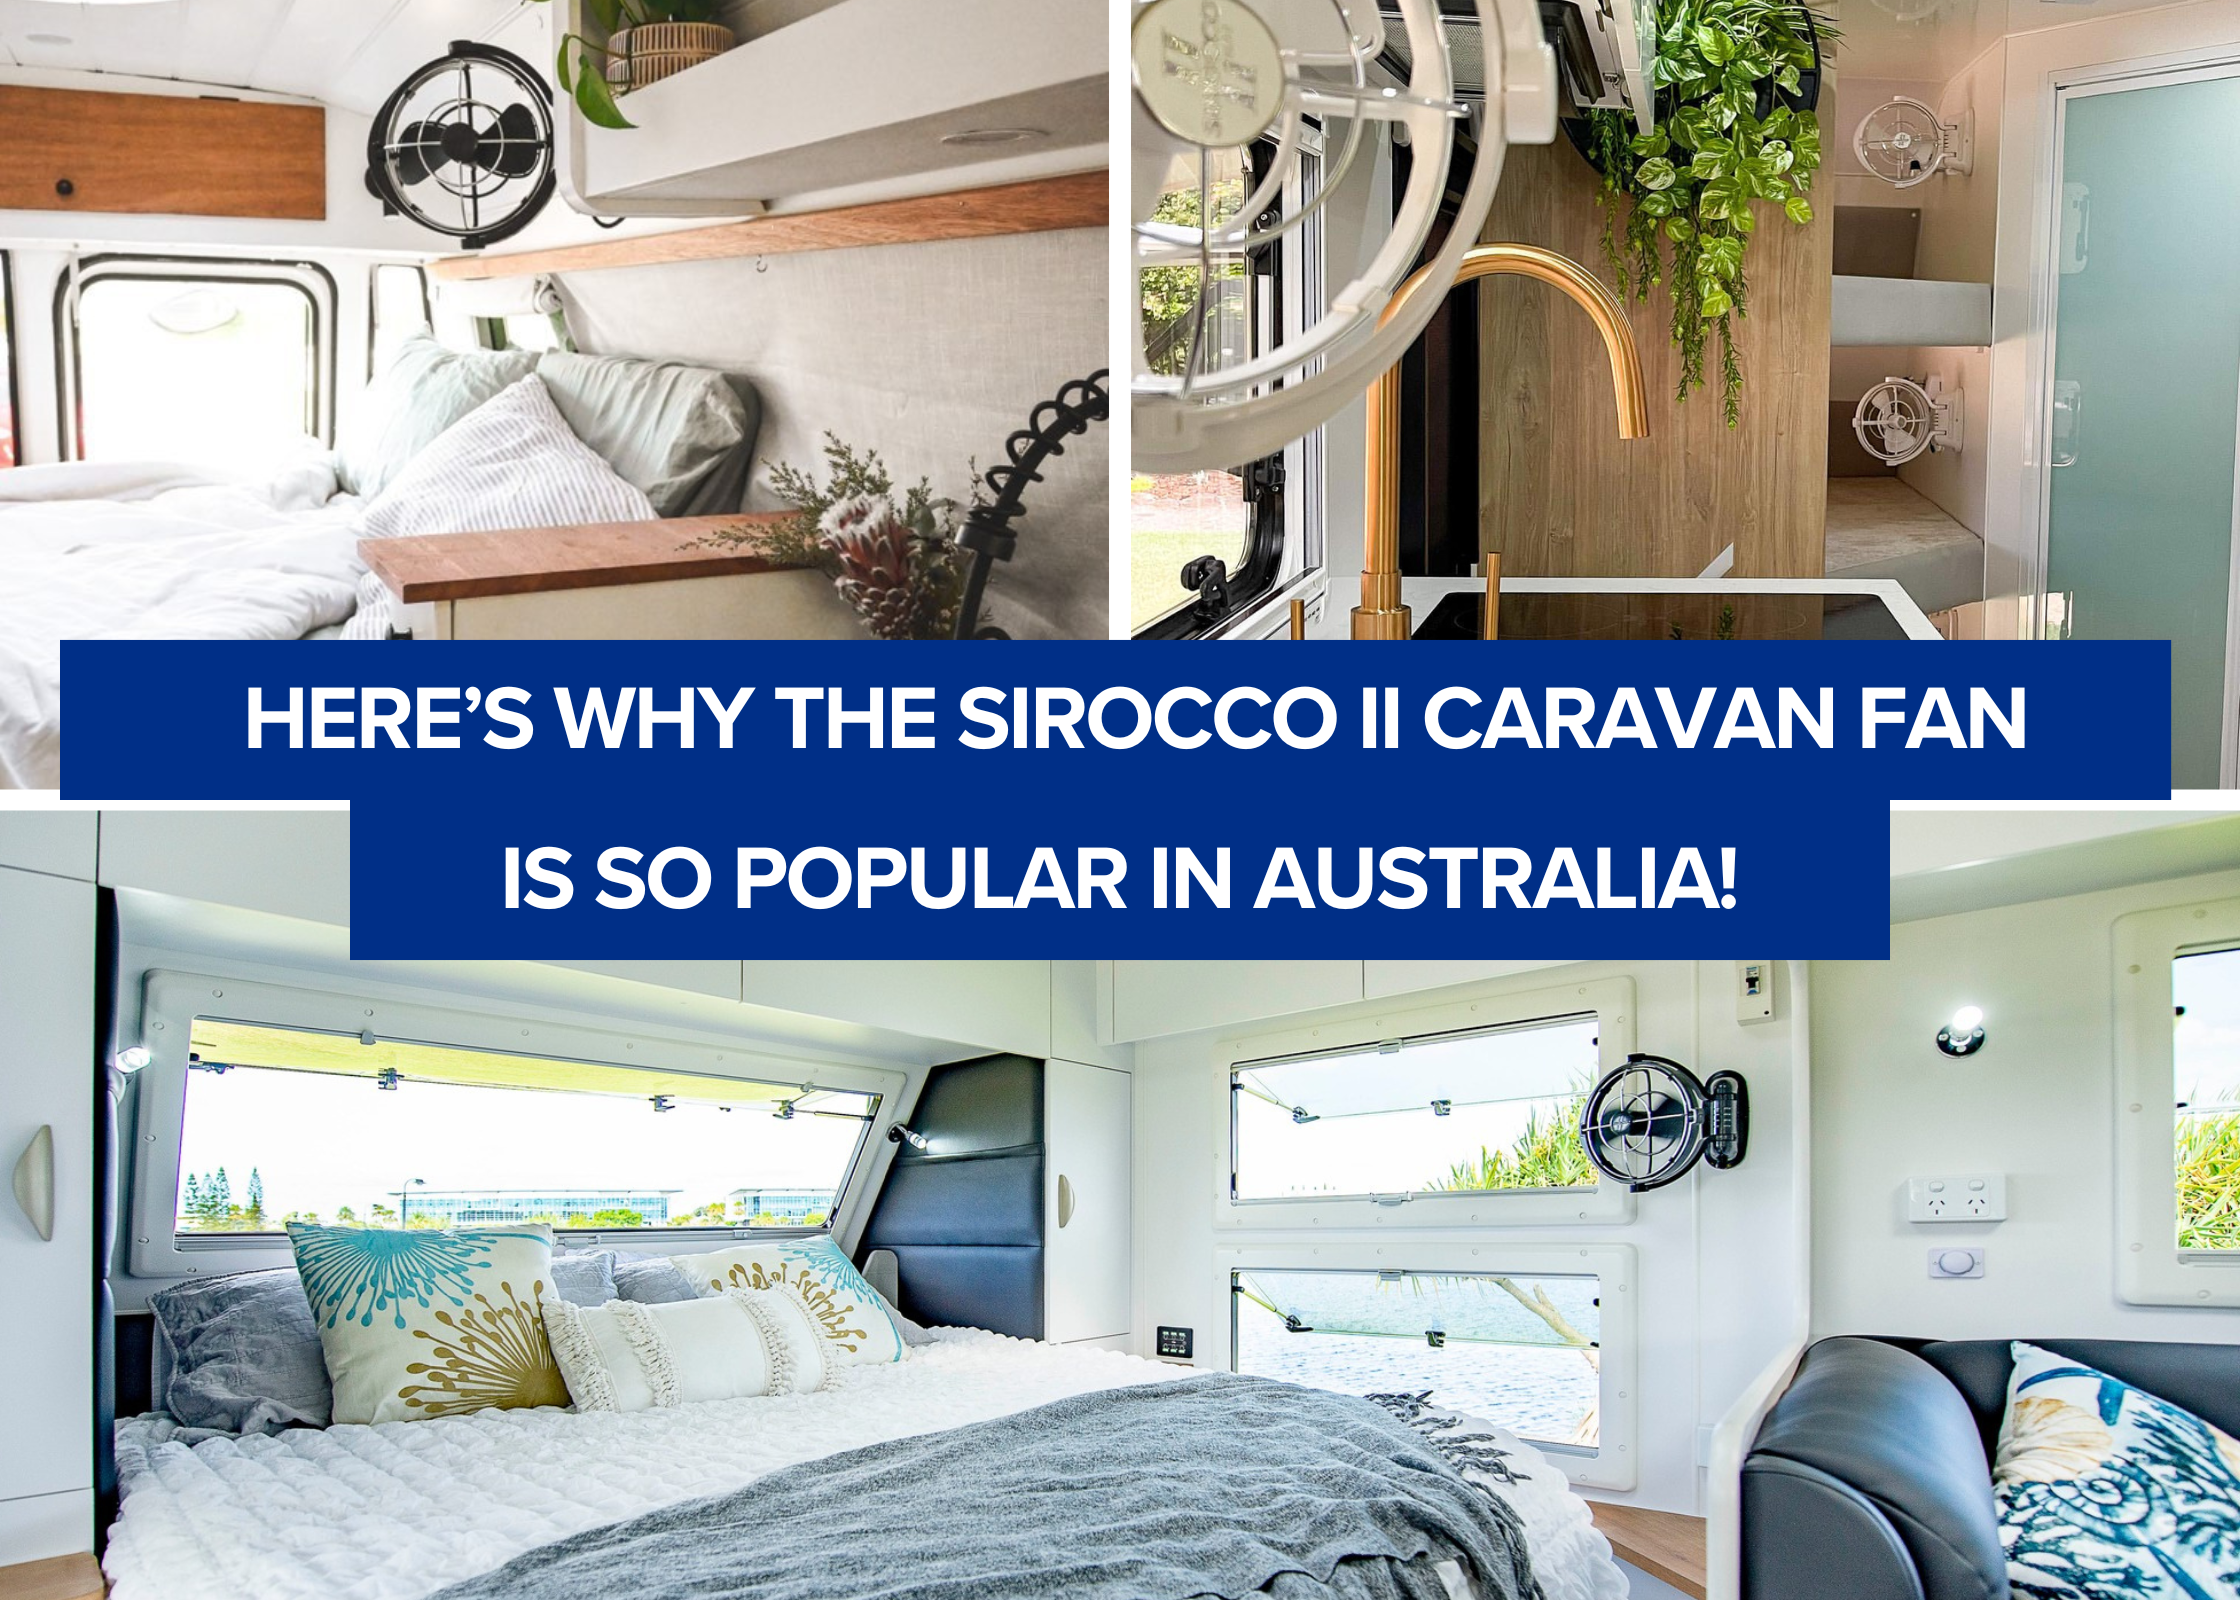 Here's Why the Sirocco II Caravan Fan Is So Popular in Australia